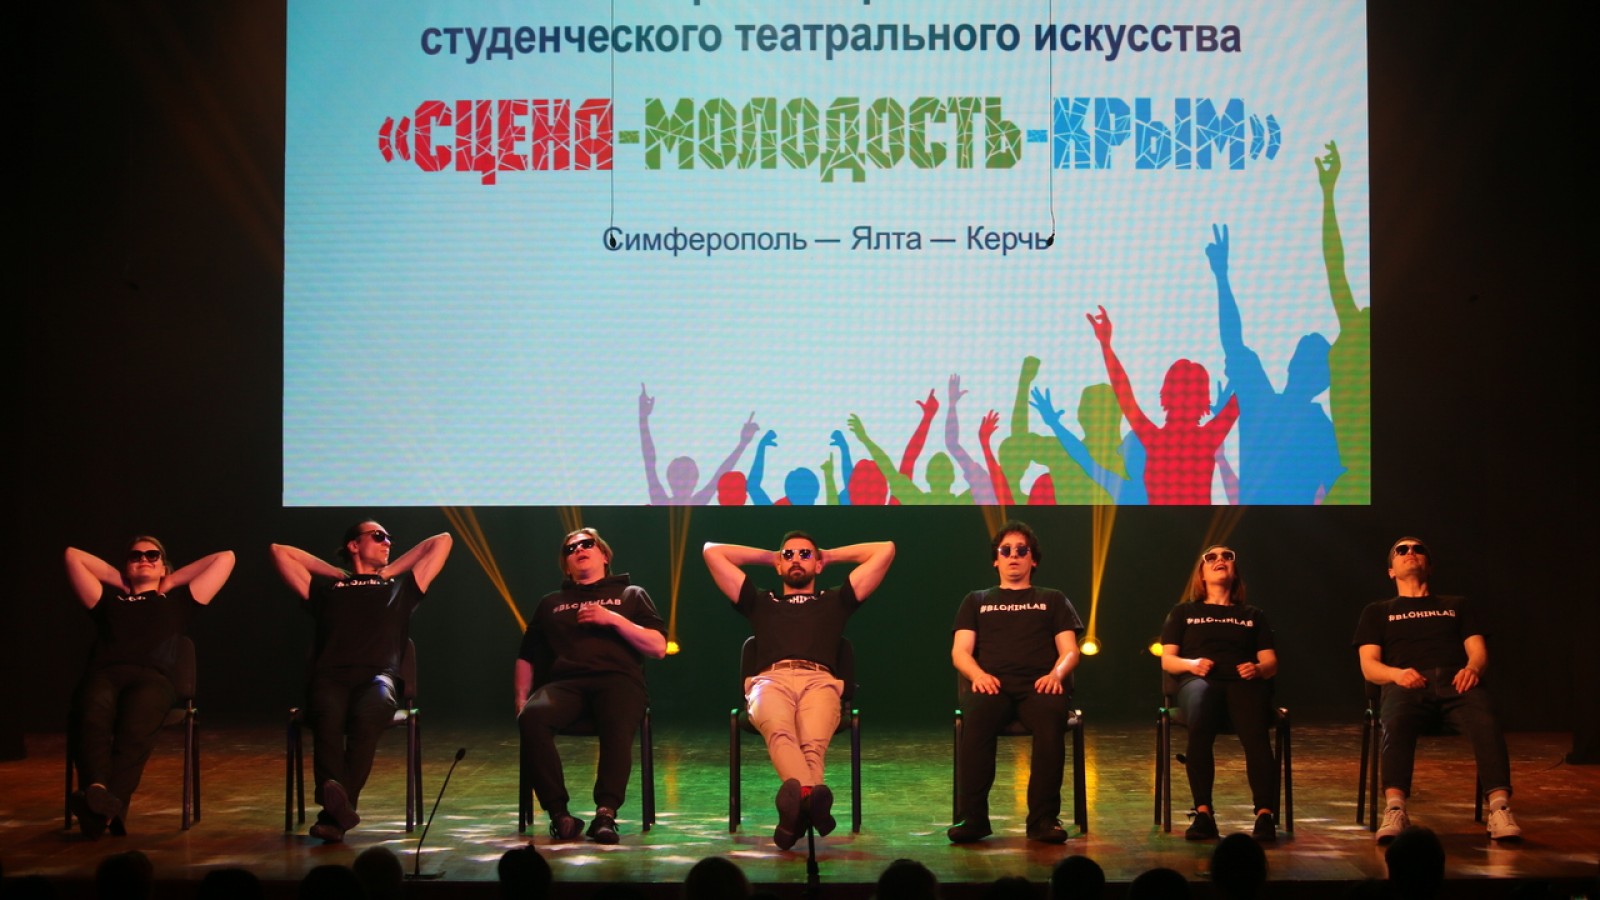 Мастерская Алексея Блохина представила «Светлые души» на II Открытом фестивале студенческого театрального искусства «Сцена-Молодость-Крым»